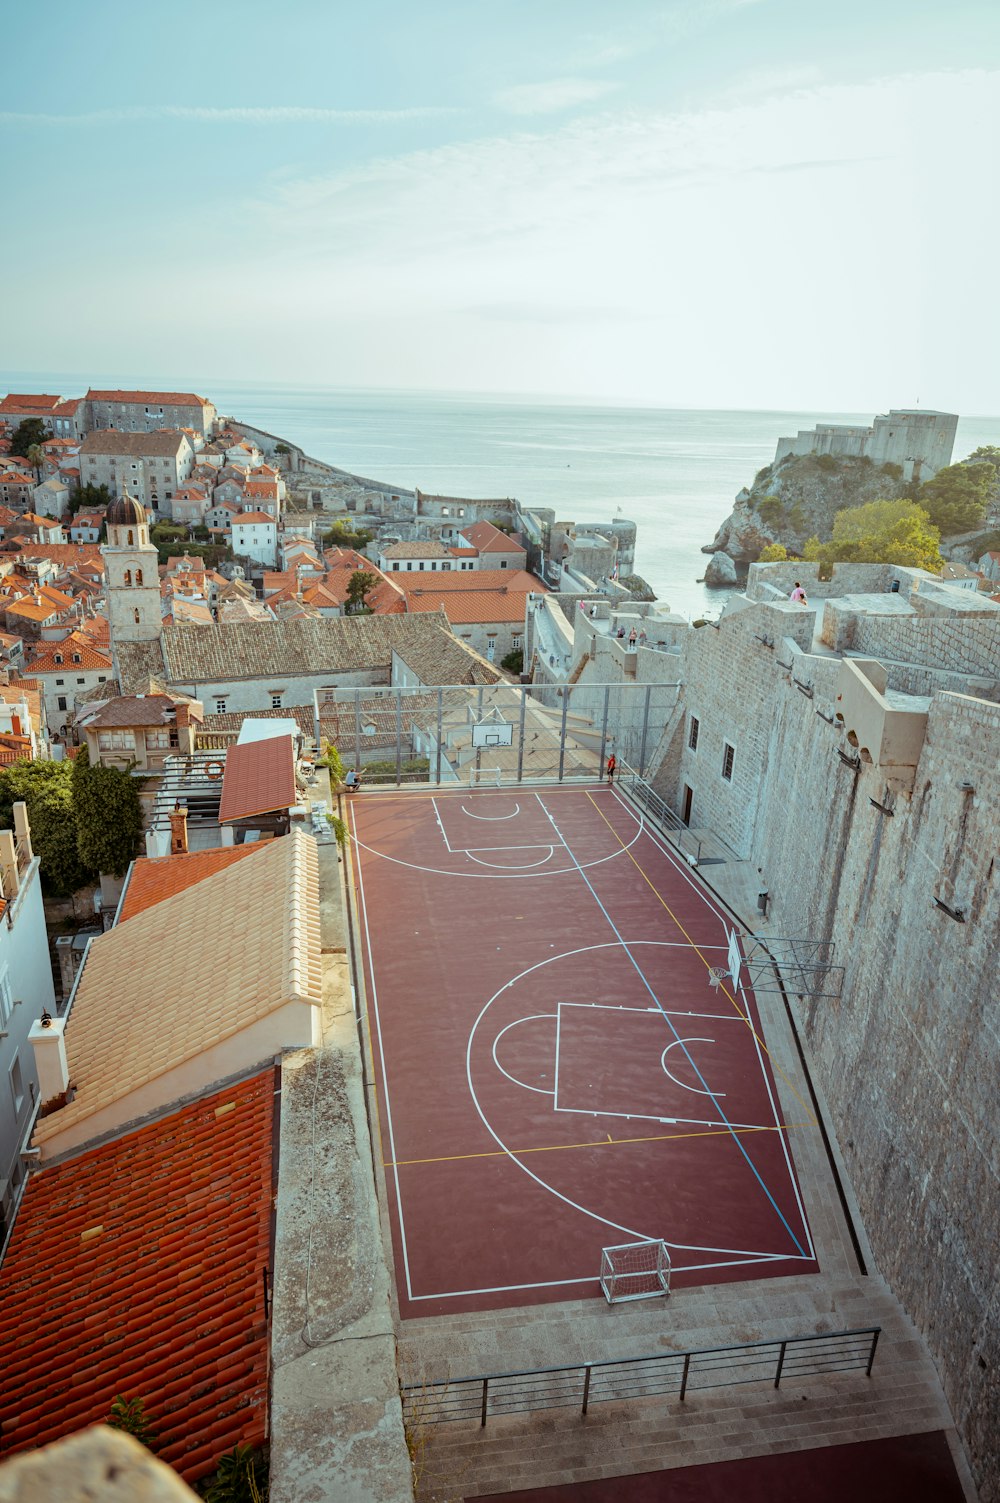 Luftaufnahme eines Basketballplatzes in einer Stadt